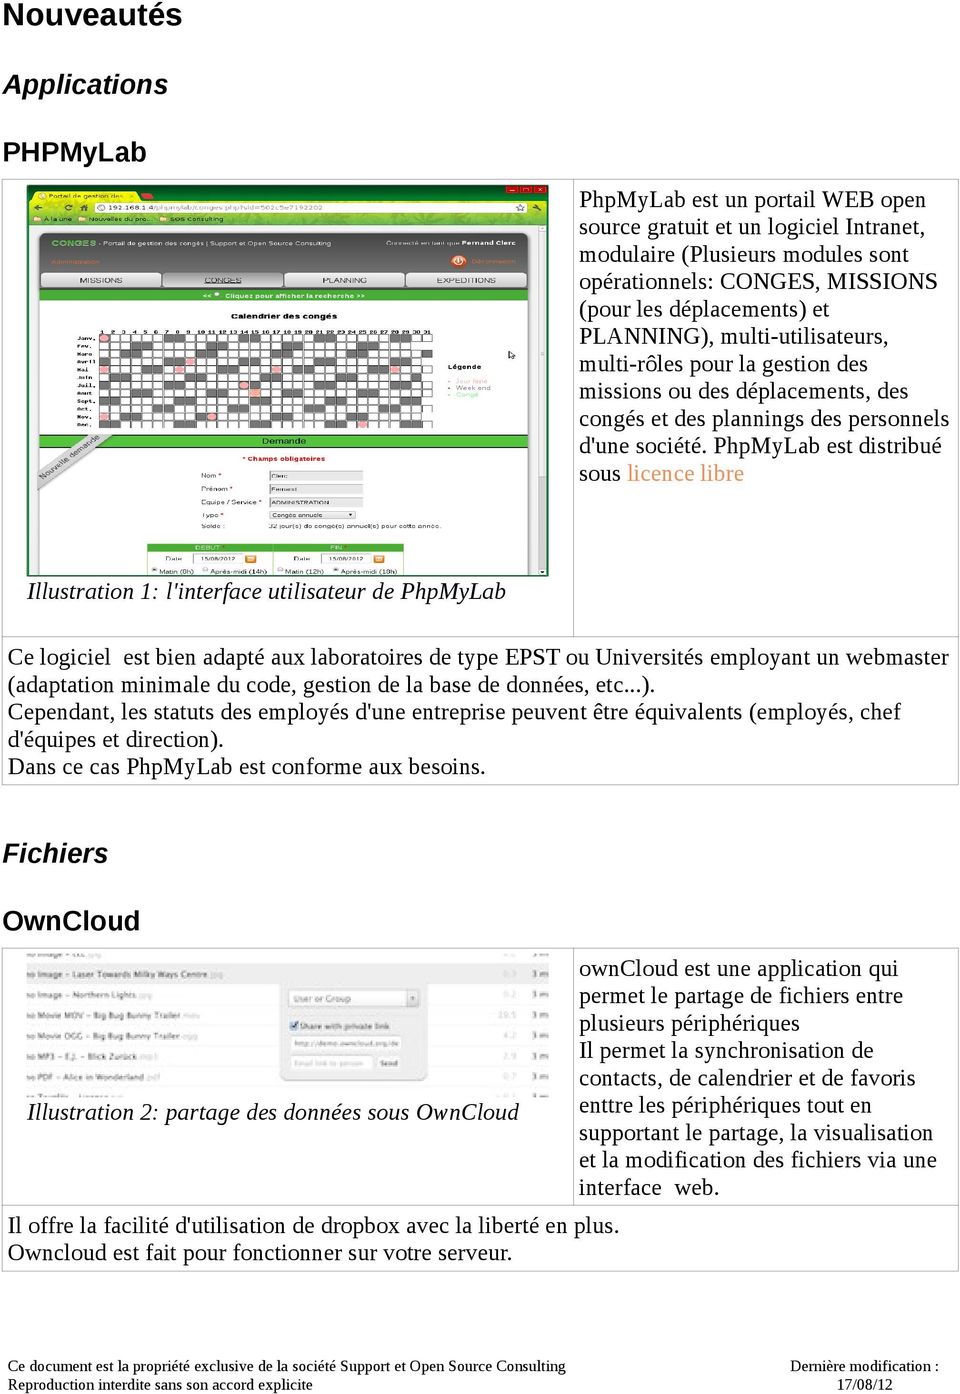 PhpMyLab est distribué sous licence libre Illustration 1: l'interface utilisateur de PhpMyLab Ce logiciel est bien adapté aux laboratoires de type EPST ou Universités employant un webmaster